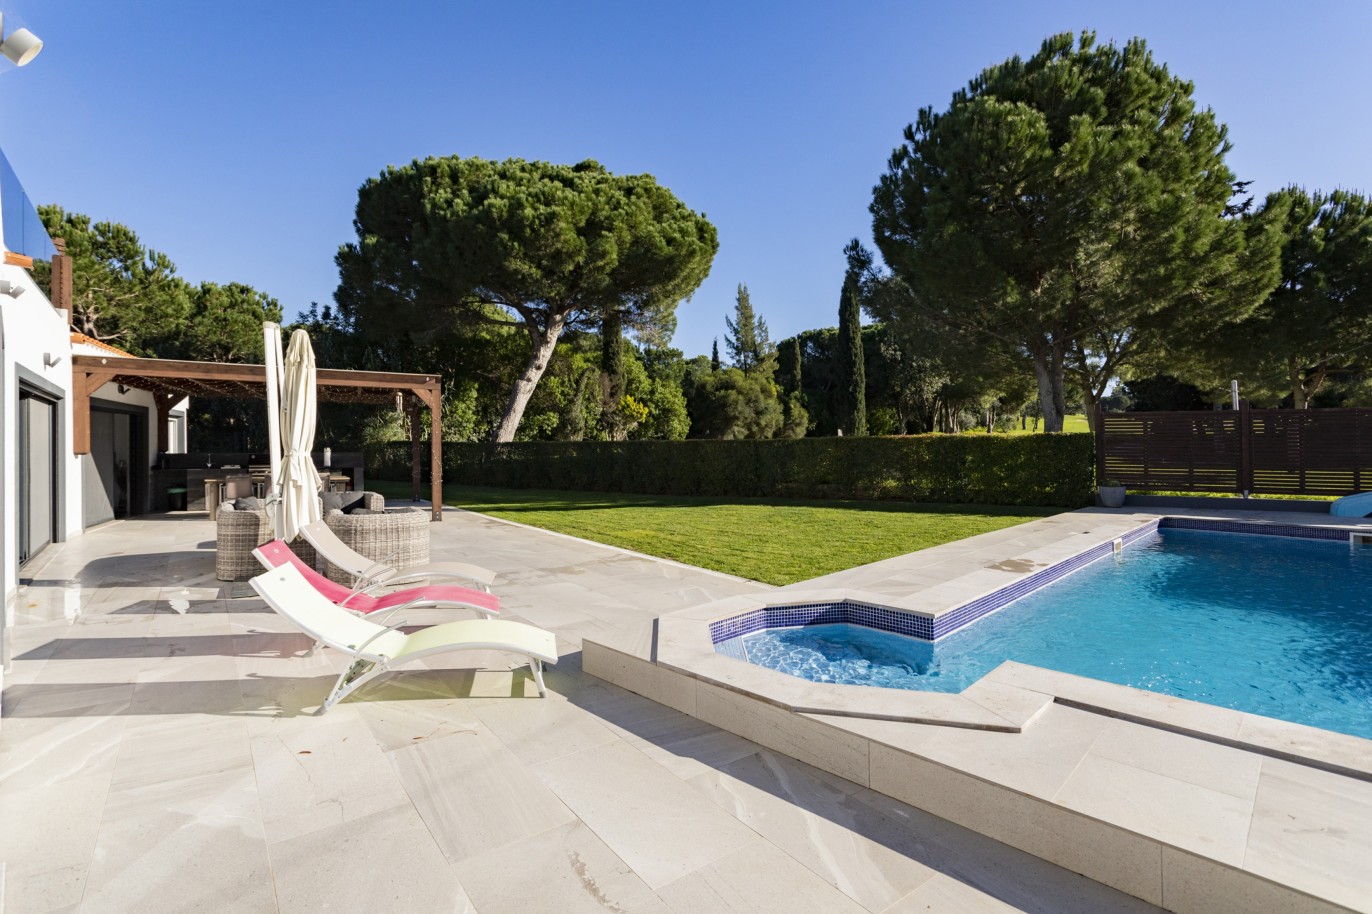 4 Bedroom Villa with swimming pool for sale, in Vilamoura, Algarve_214575